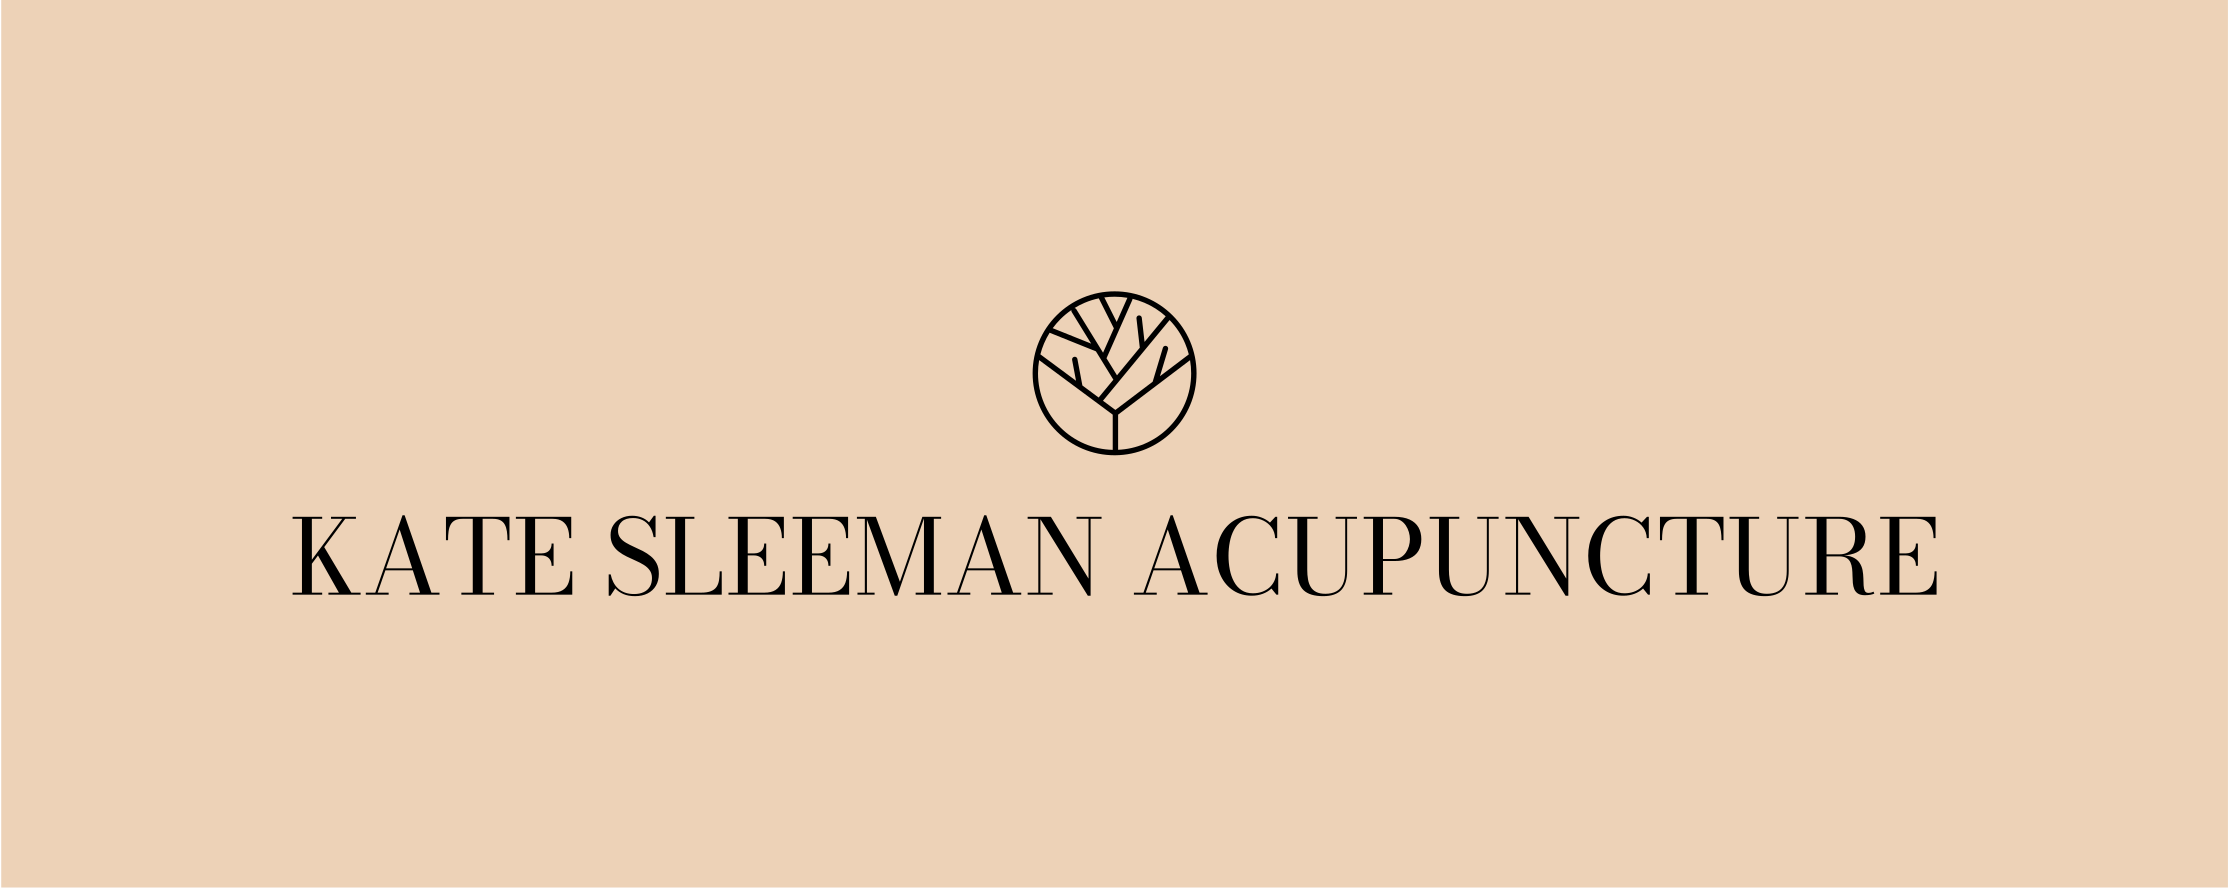 Kate Sleeman Acupuncture